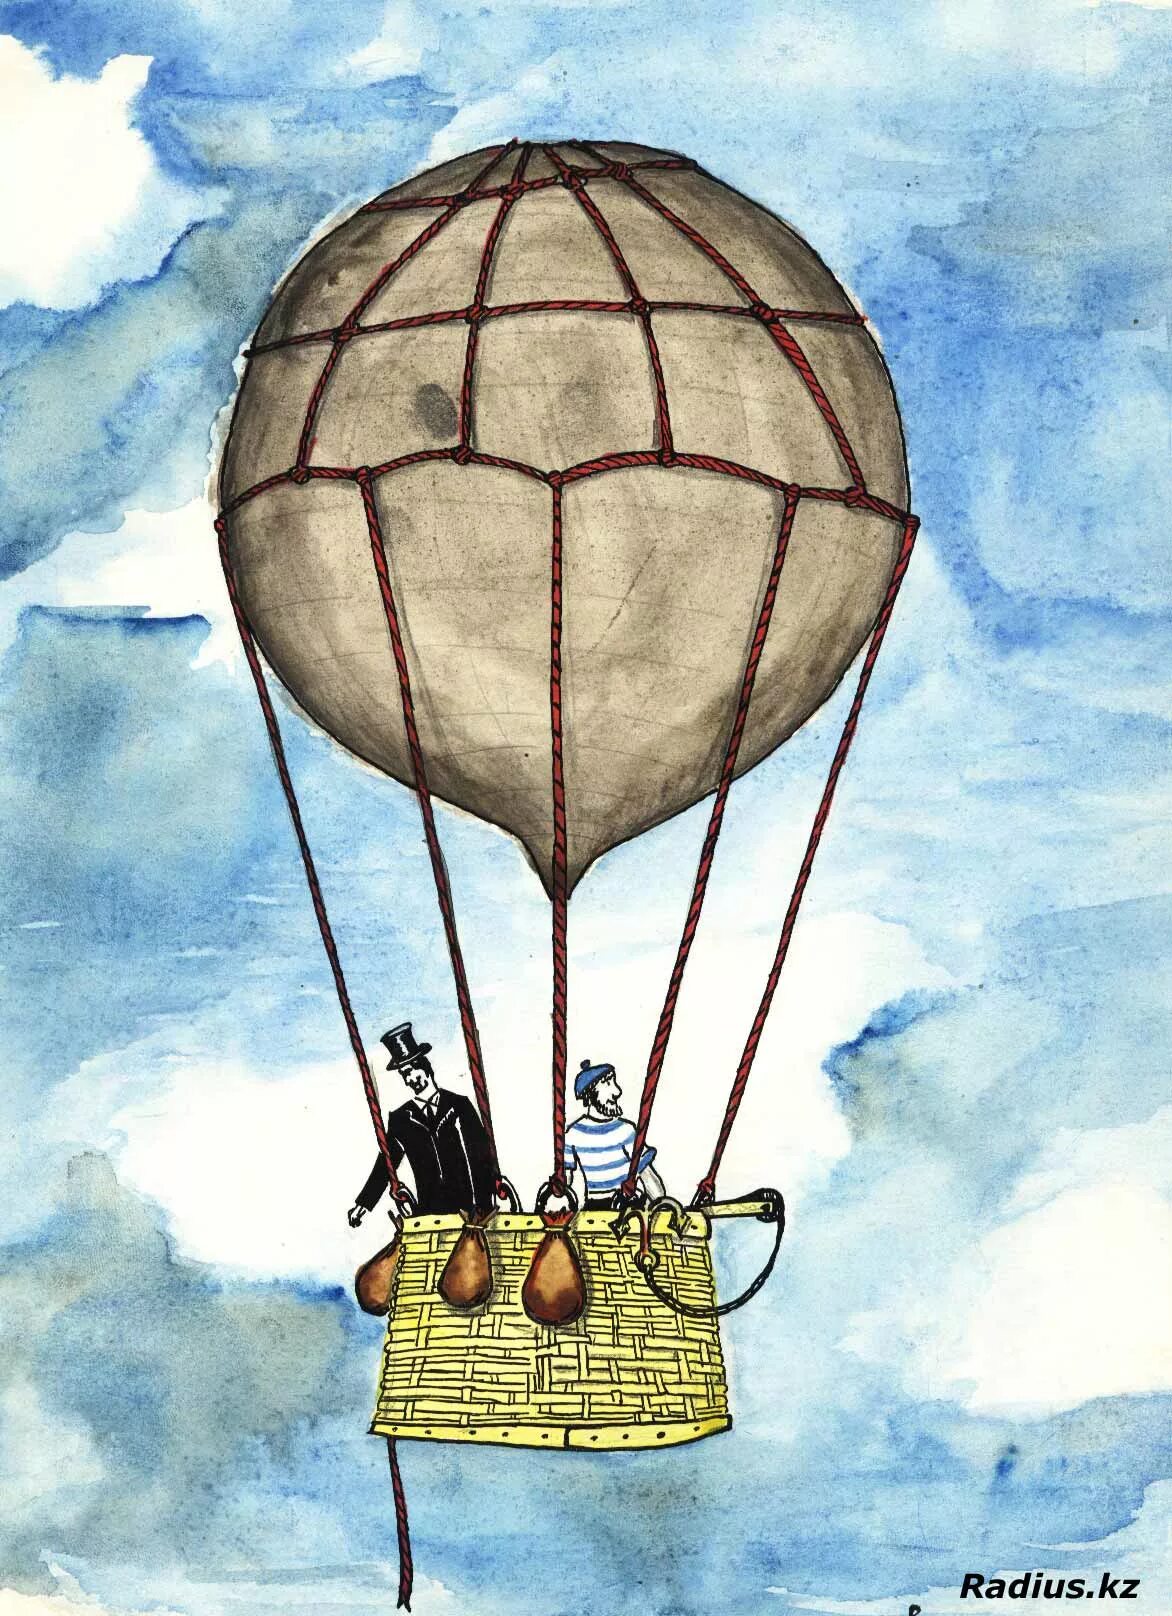 Жюль Верн вокруг света за 80 дней. Воздушный шар Жюль Верн. Путешествие на воздушном шаре Жюль Верн. Вокруг света на воздушном шаре Жюль Верн.